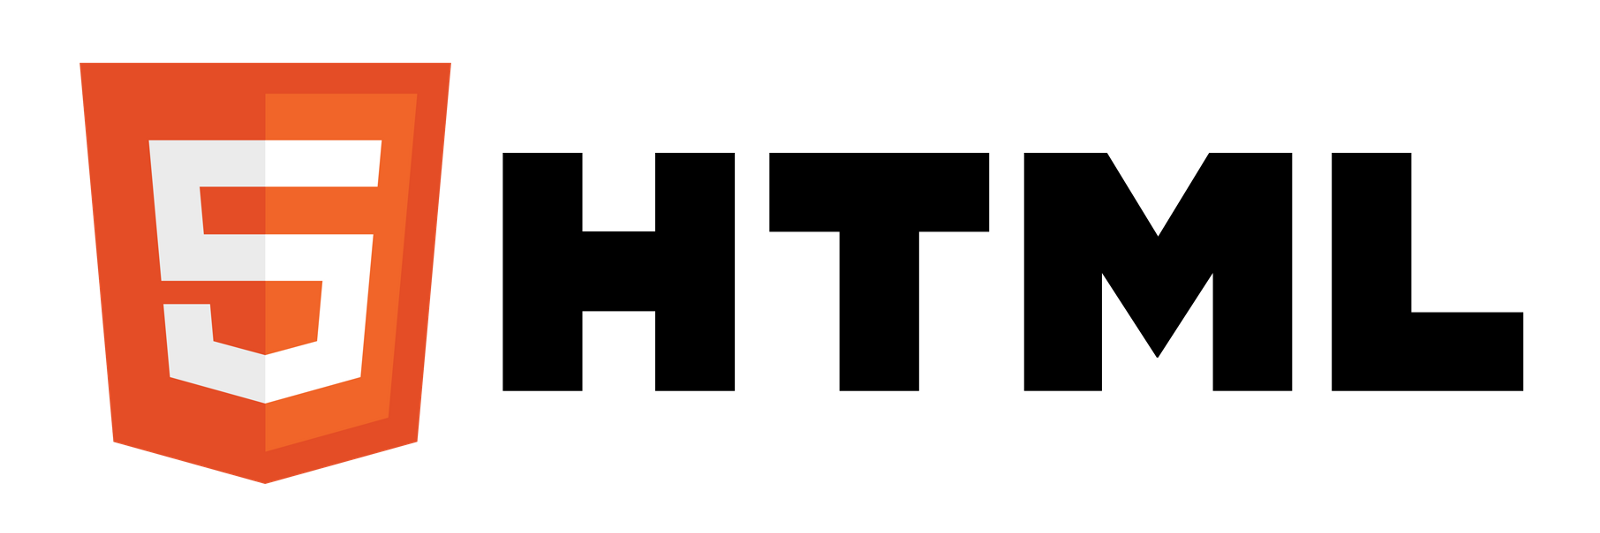 Martech-Html-5-Logo